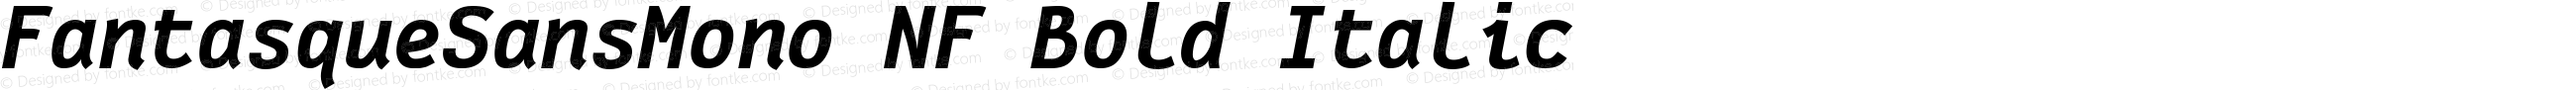 Fantasque Sans Mono Bold Italic Nerd Font Plus Font Awesome Plus Font Linux Mono Windows Compatible